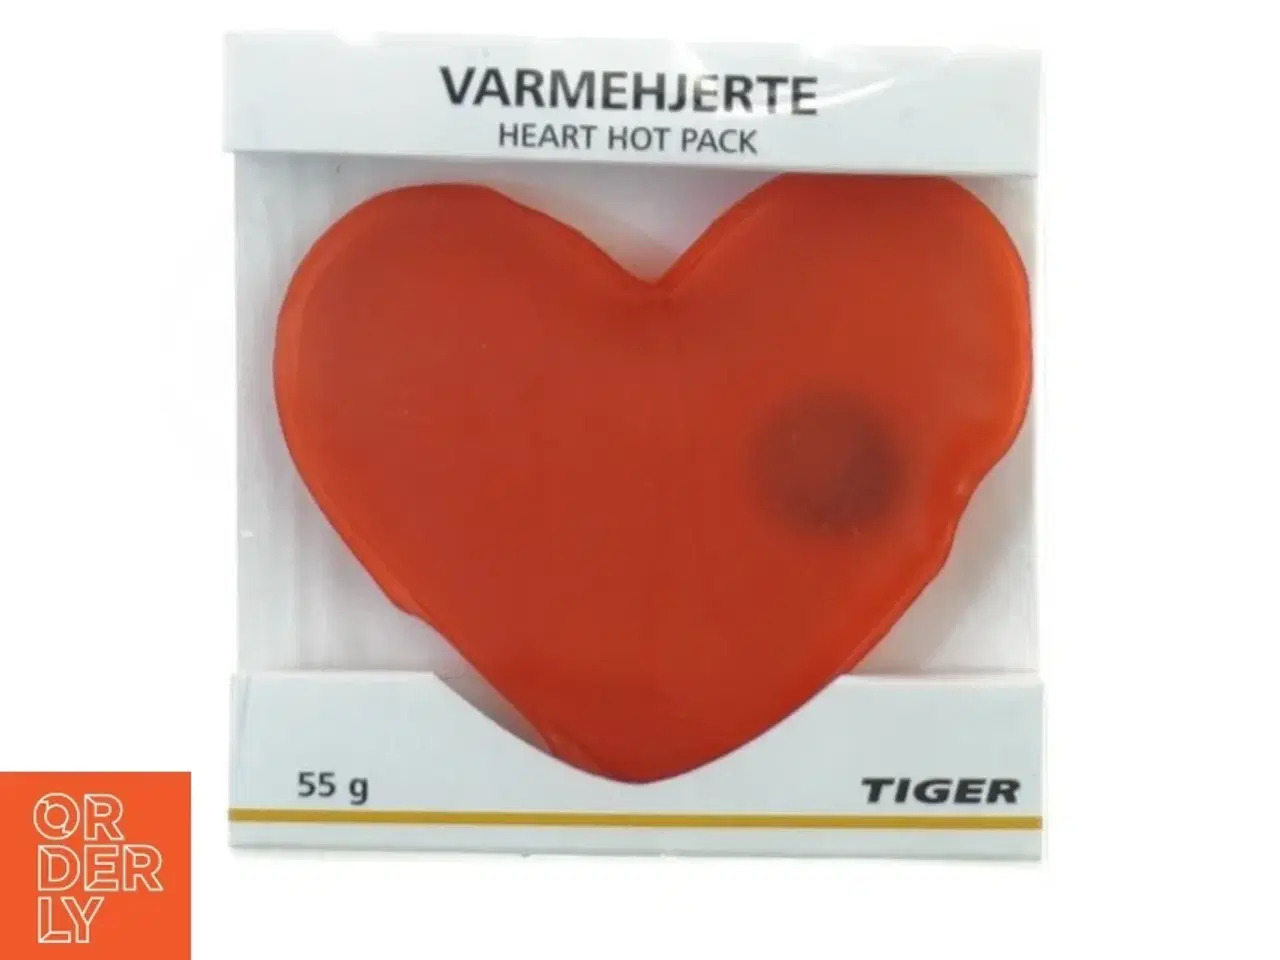 Billede 1 - Varme hjerte (varmedunk) fra Flying Tiger (str. 10 x 11 cm)